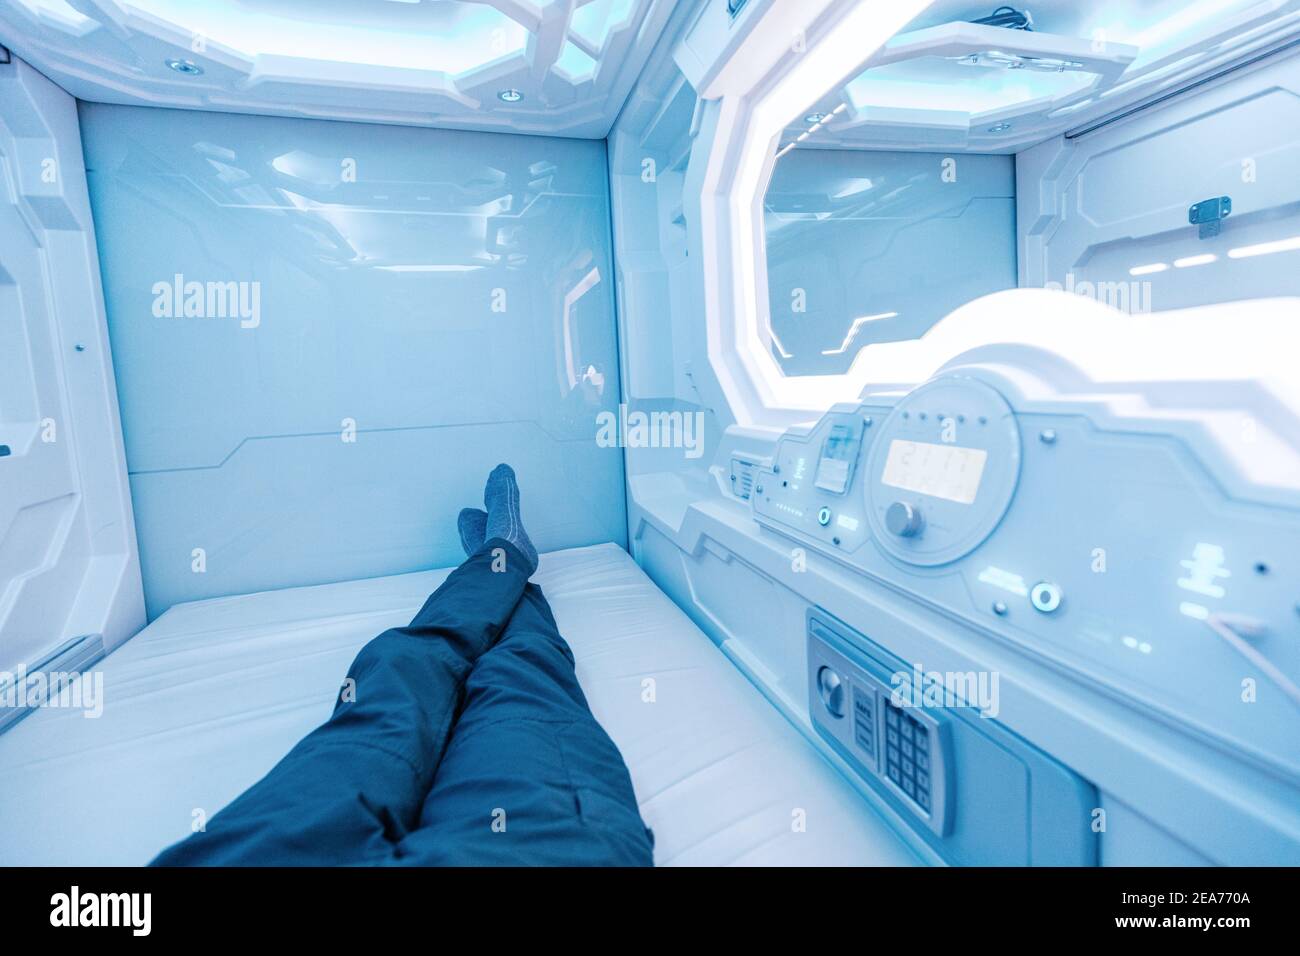 Ein Mann ruht und schläft in einer Kapsel Hotelansicht von innen. Das Innere ähnelt einer Kryokapsel in einem Raumschiff Stockfoto